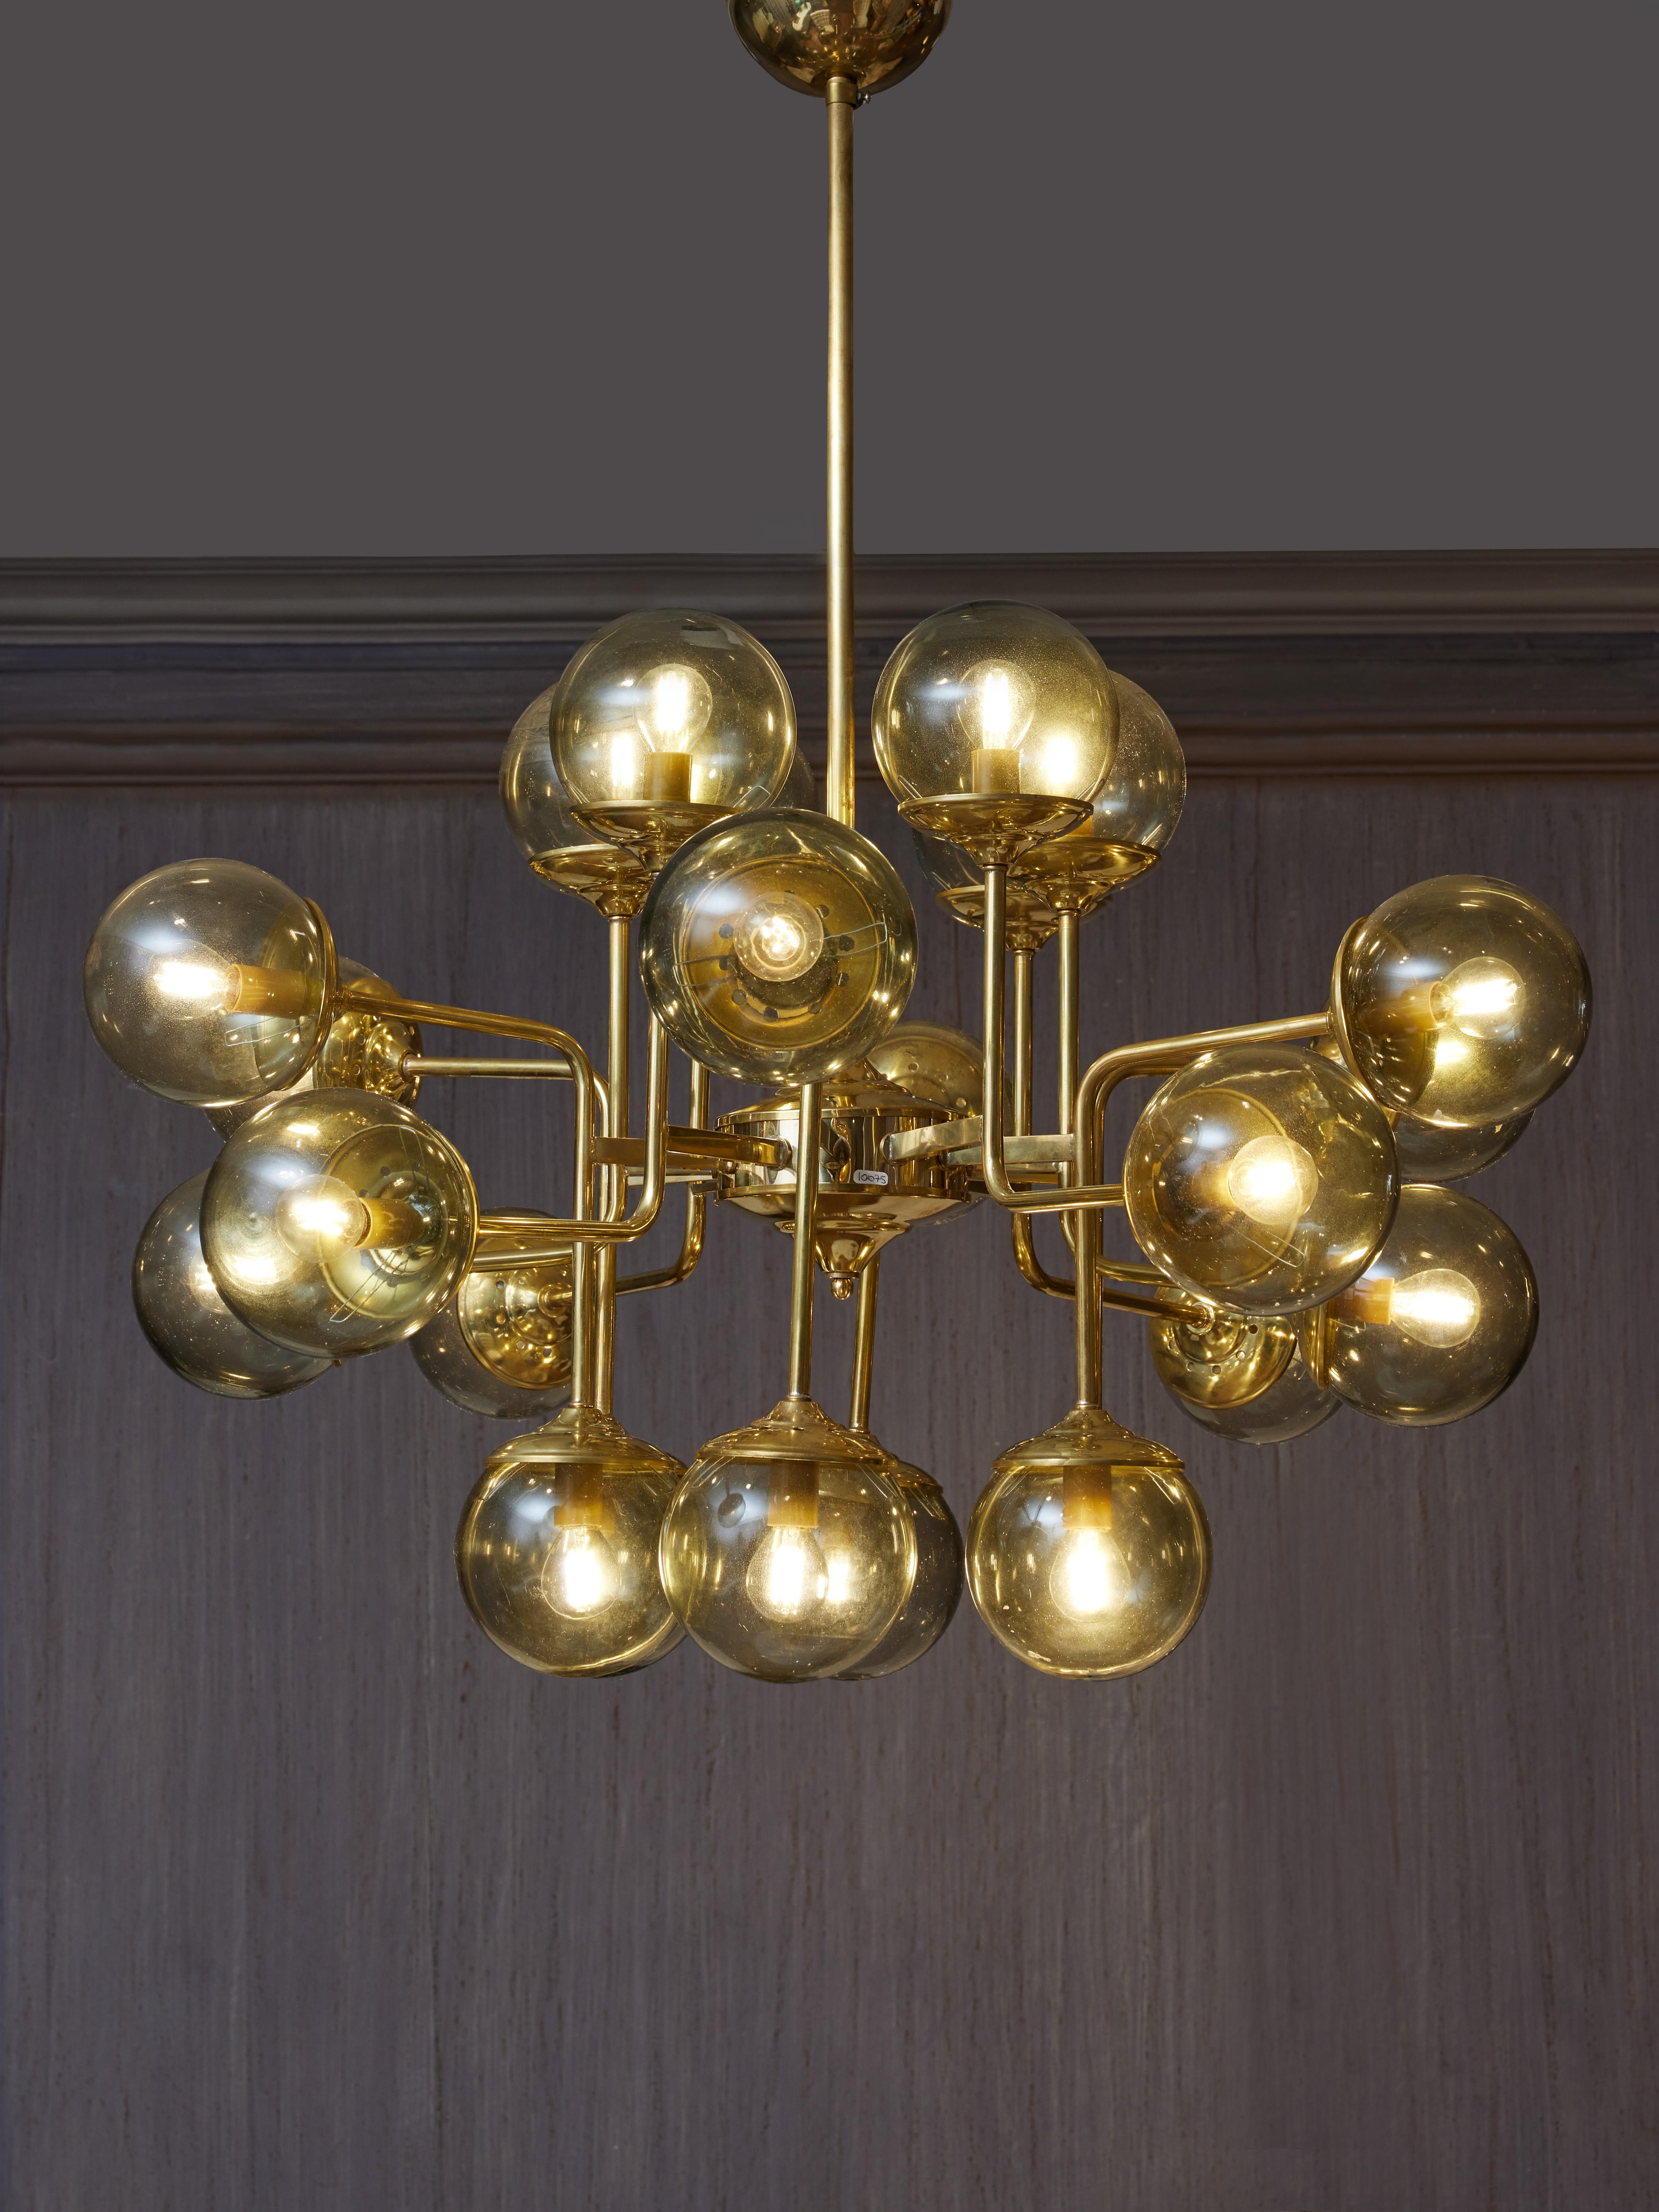 Elegant chandelier in brass in the spirit of Stilnovo with globes in Murano glass by Studio Glustin
Italy, 2023
